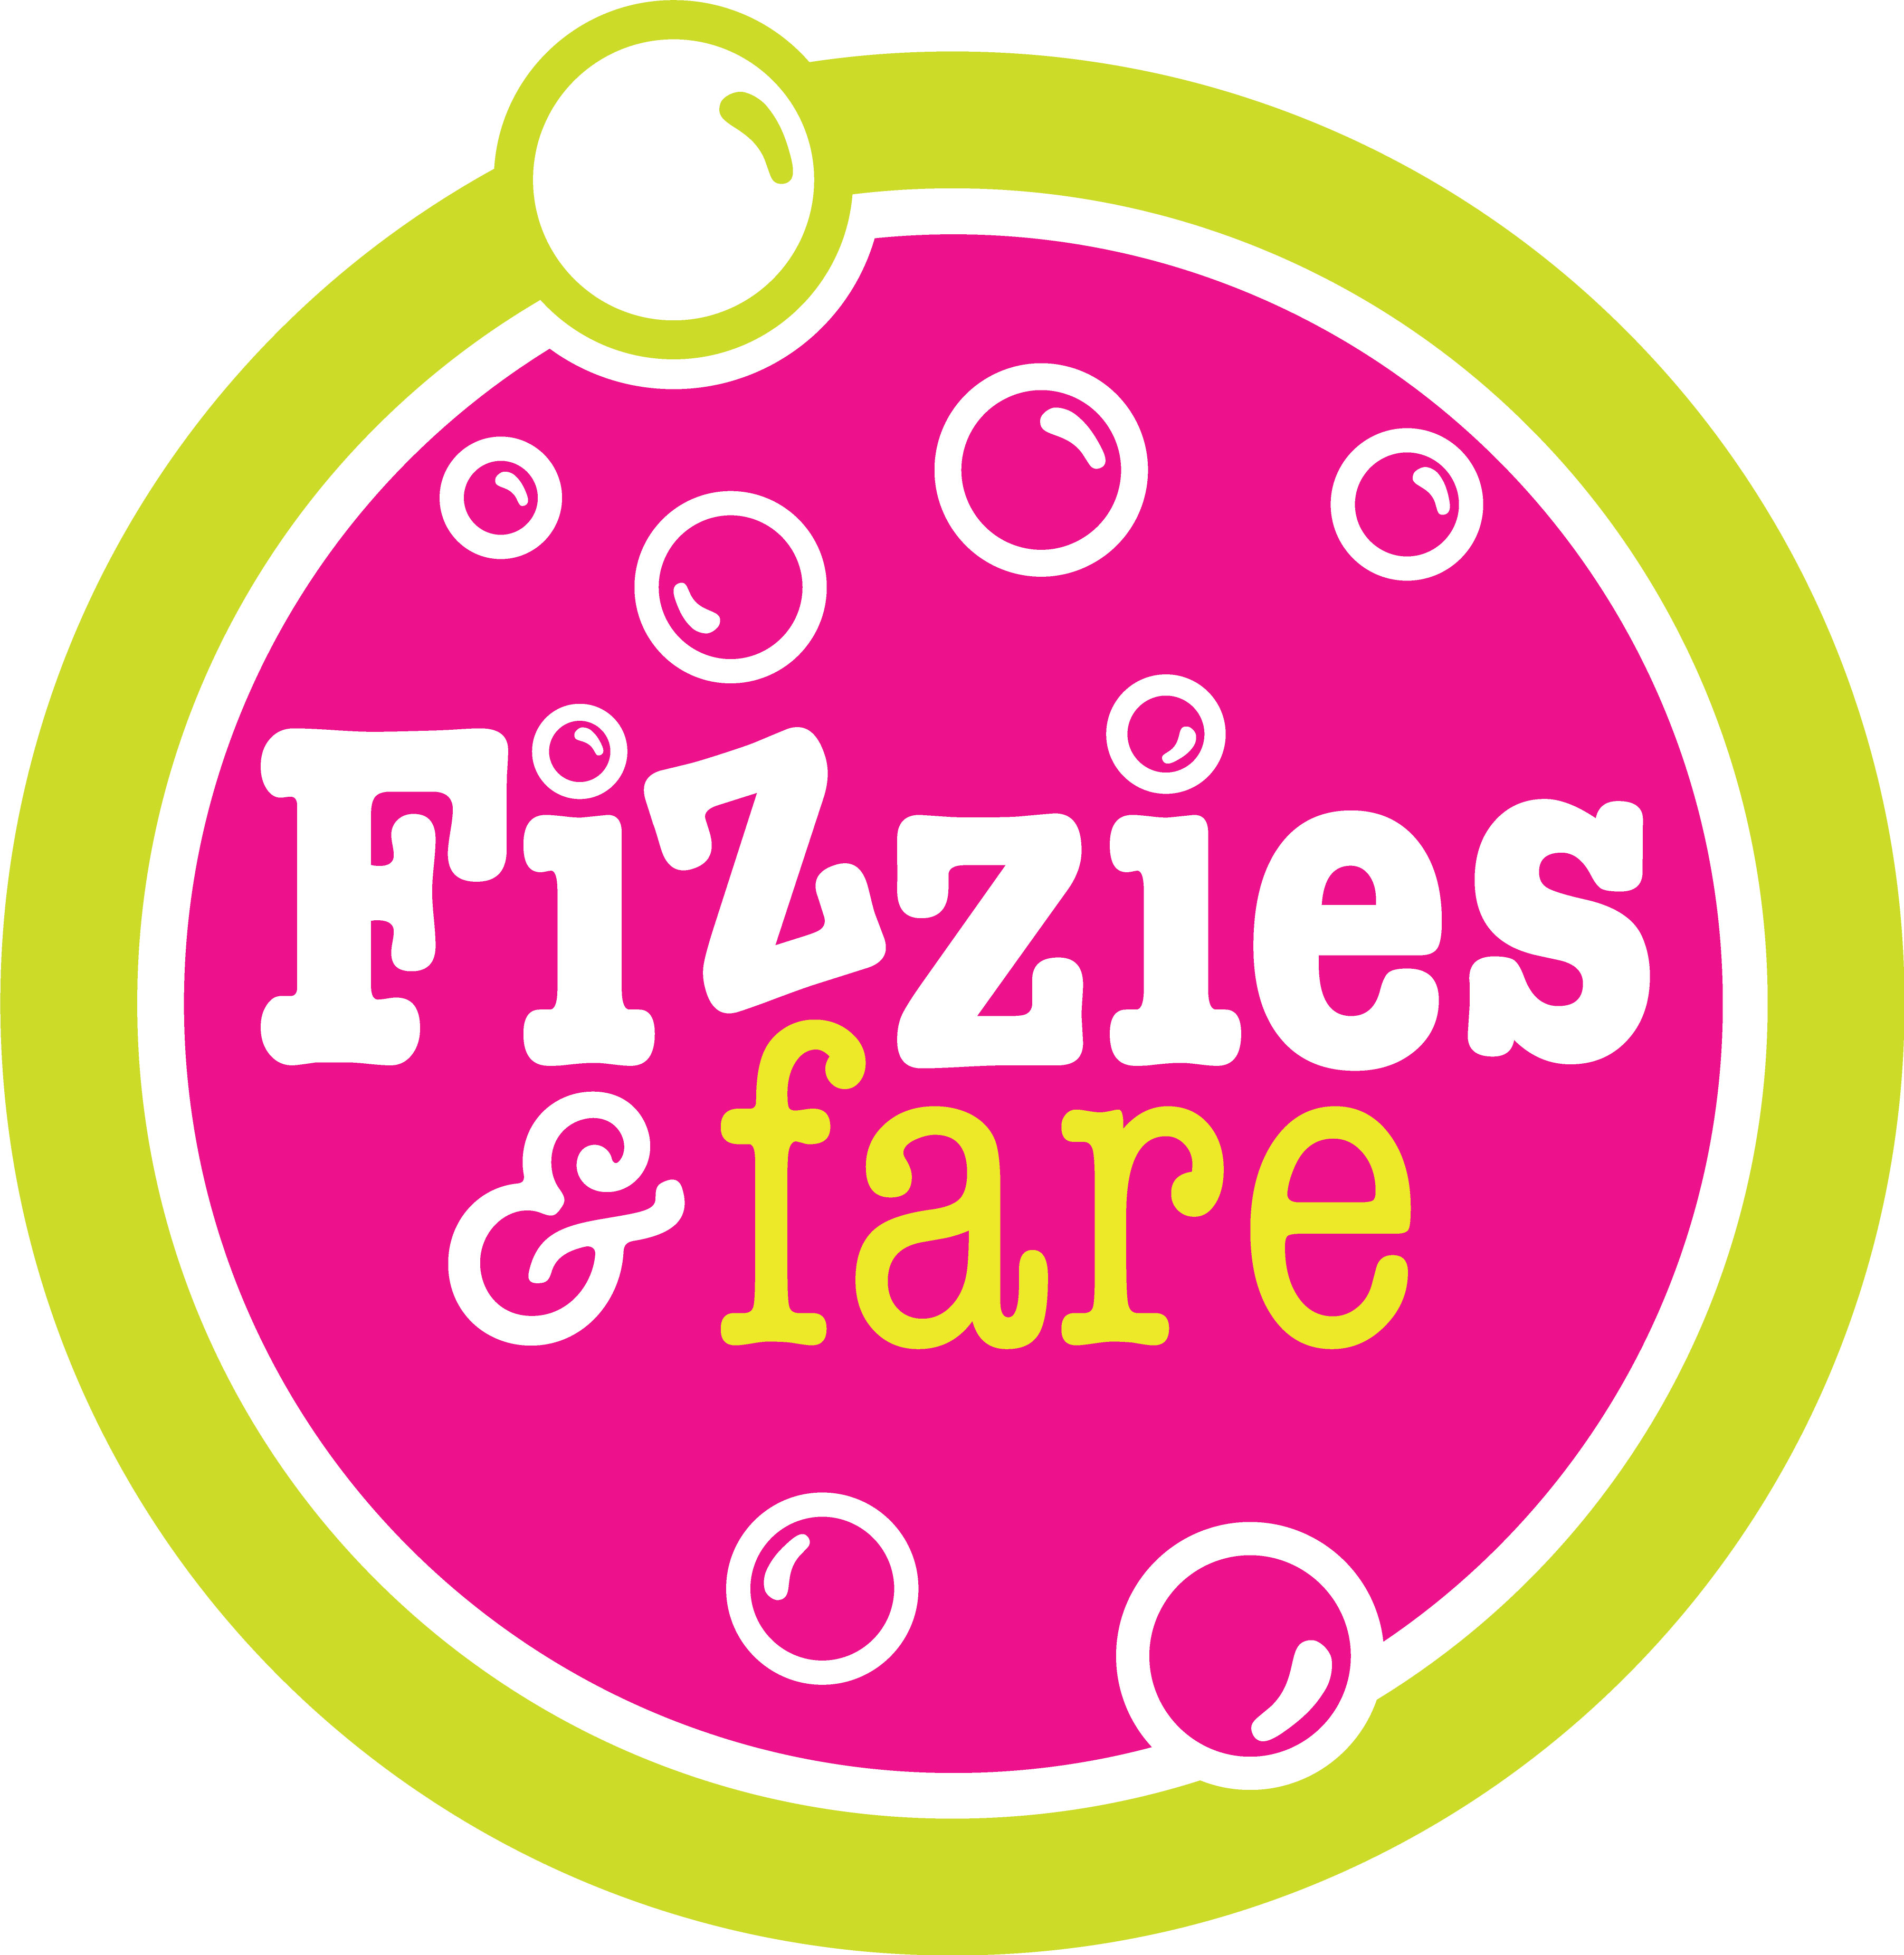 Fizzies & Fare